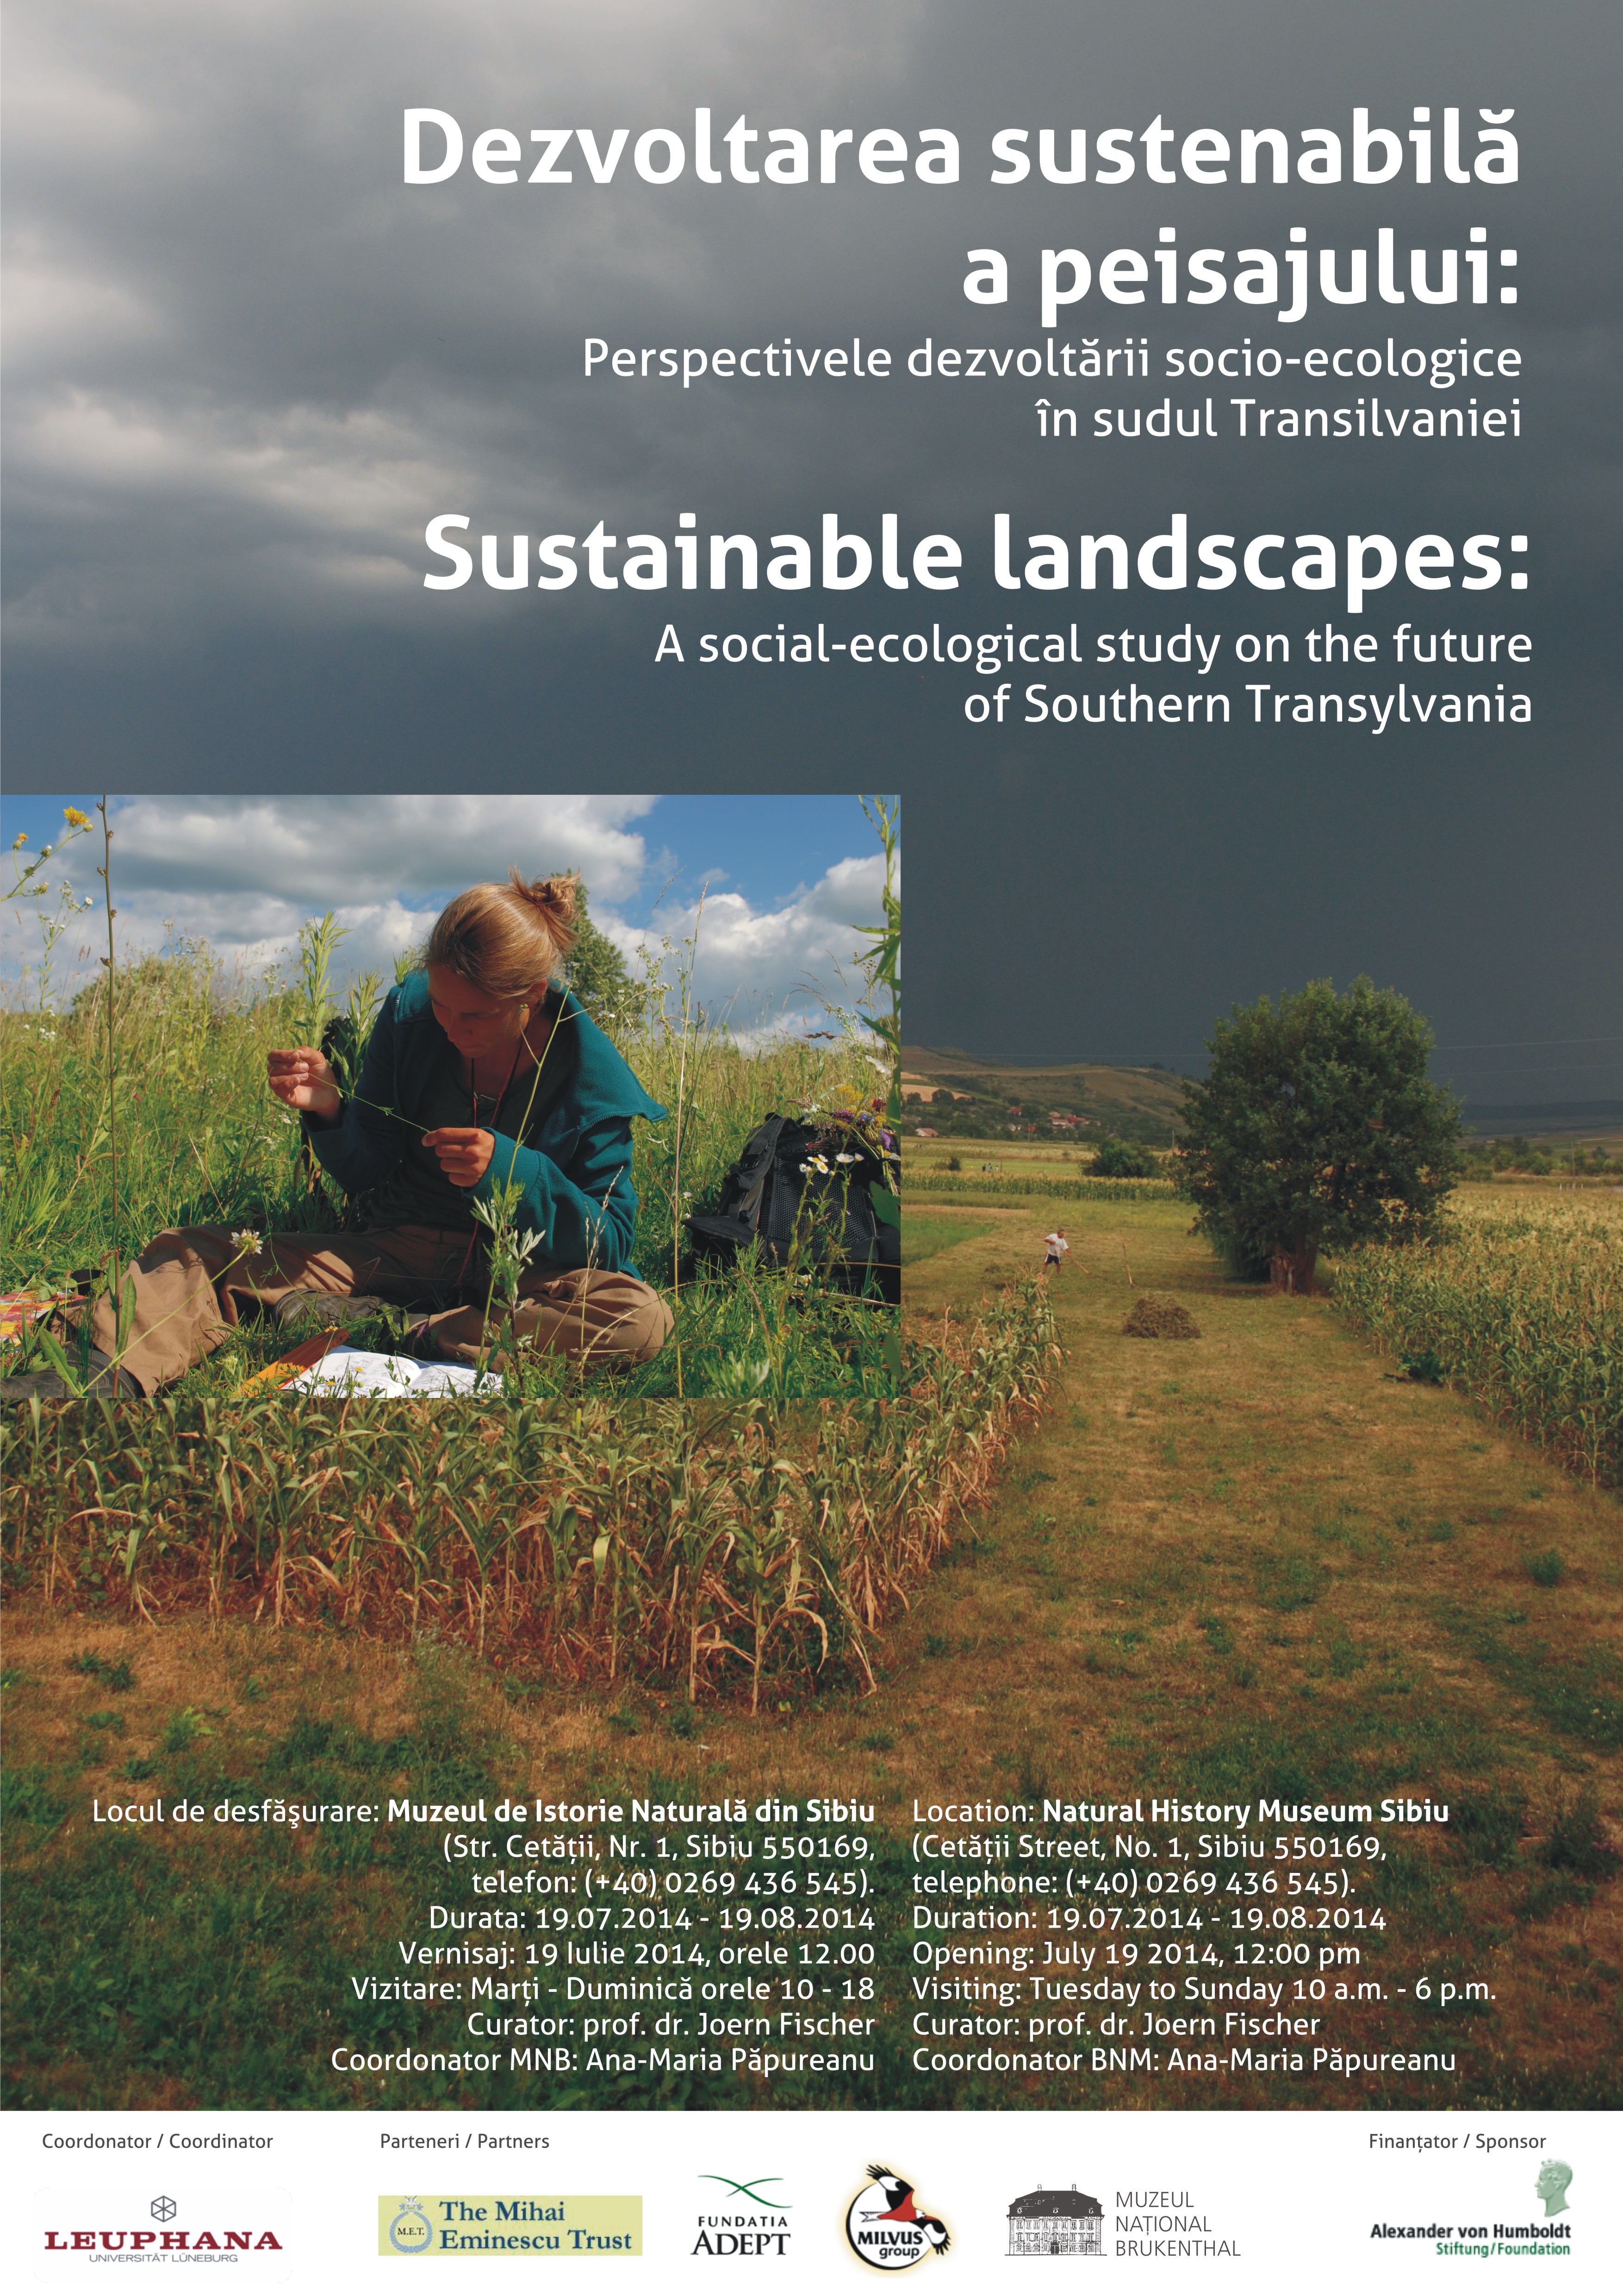 Dezvoltarea sustenabilă a peisajului: Perspectivele dezvoltării socio-ecologice în sudul Transilvaniei